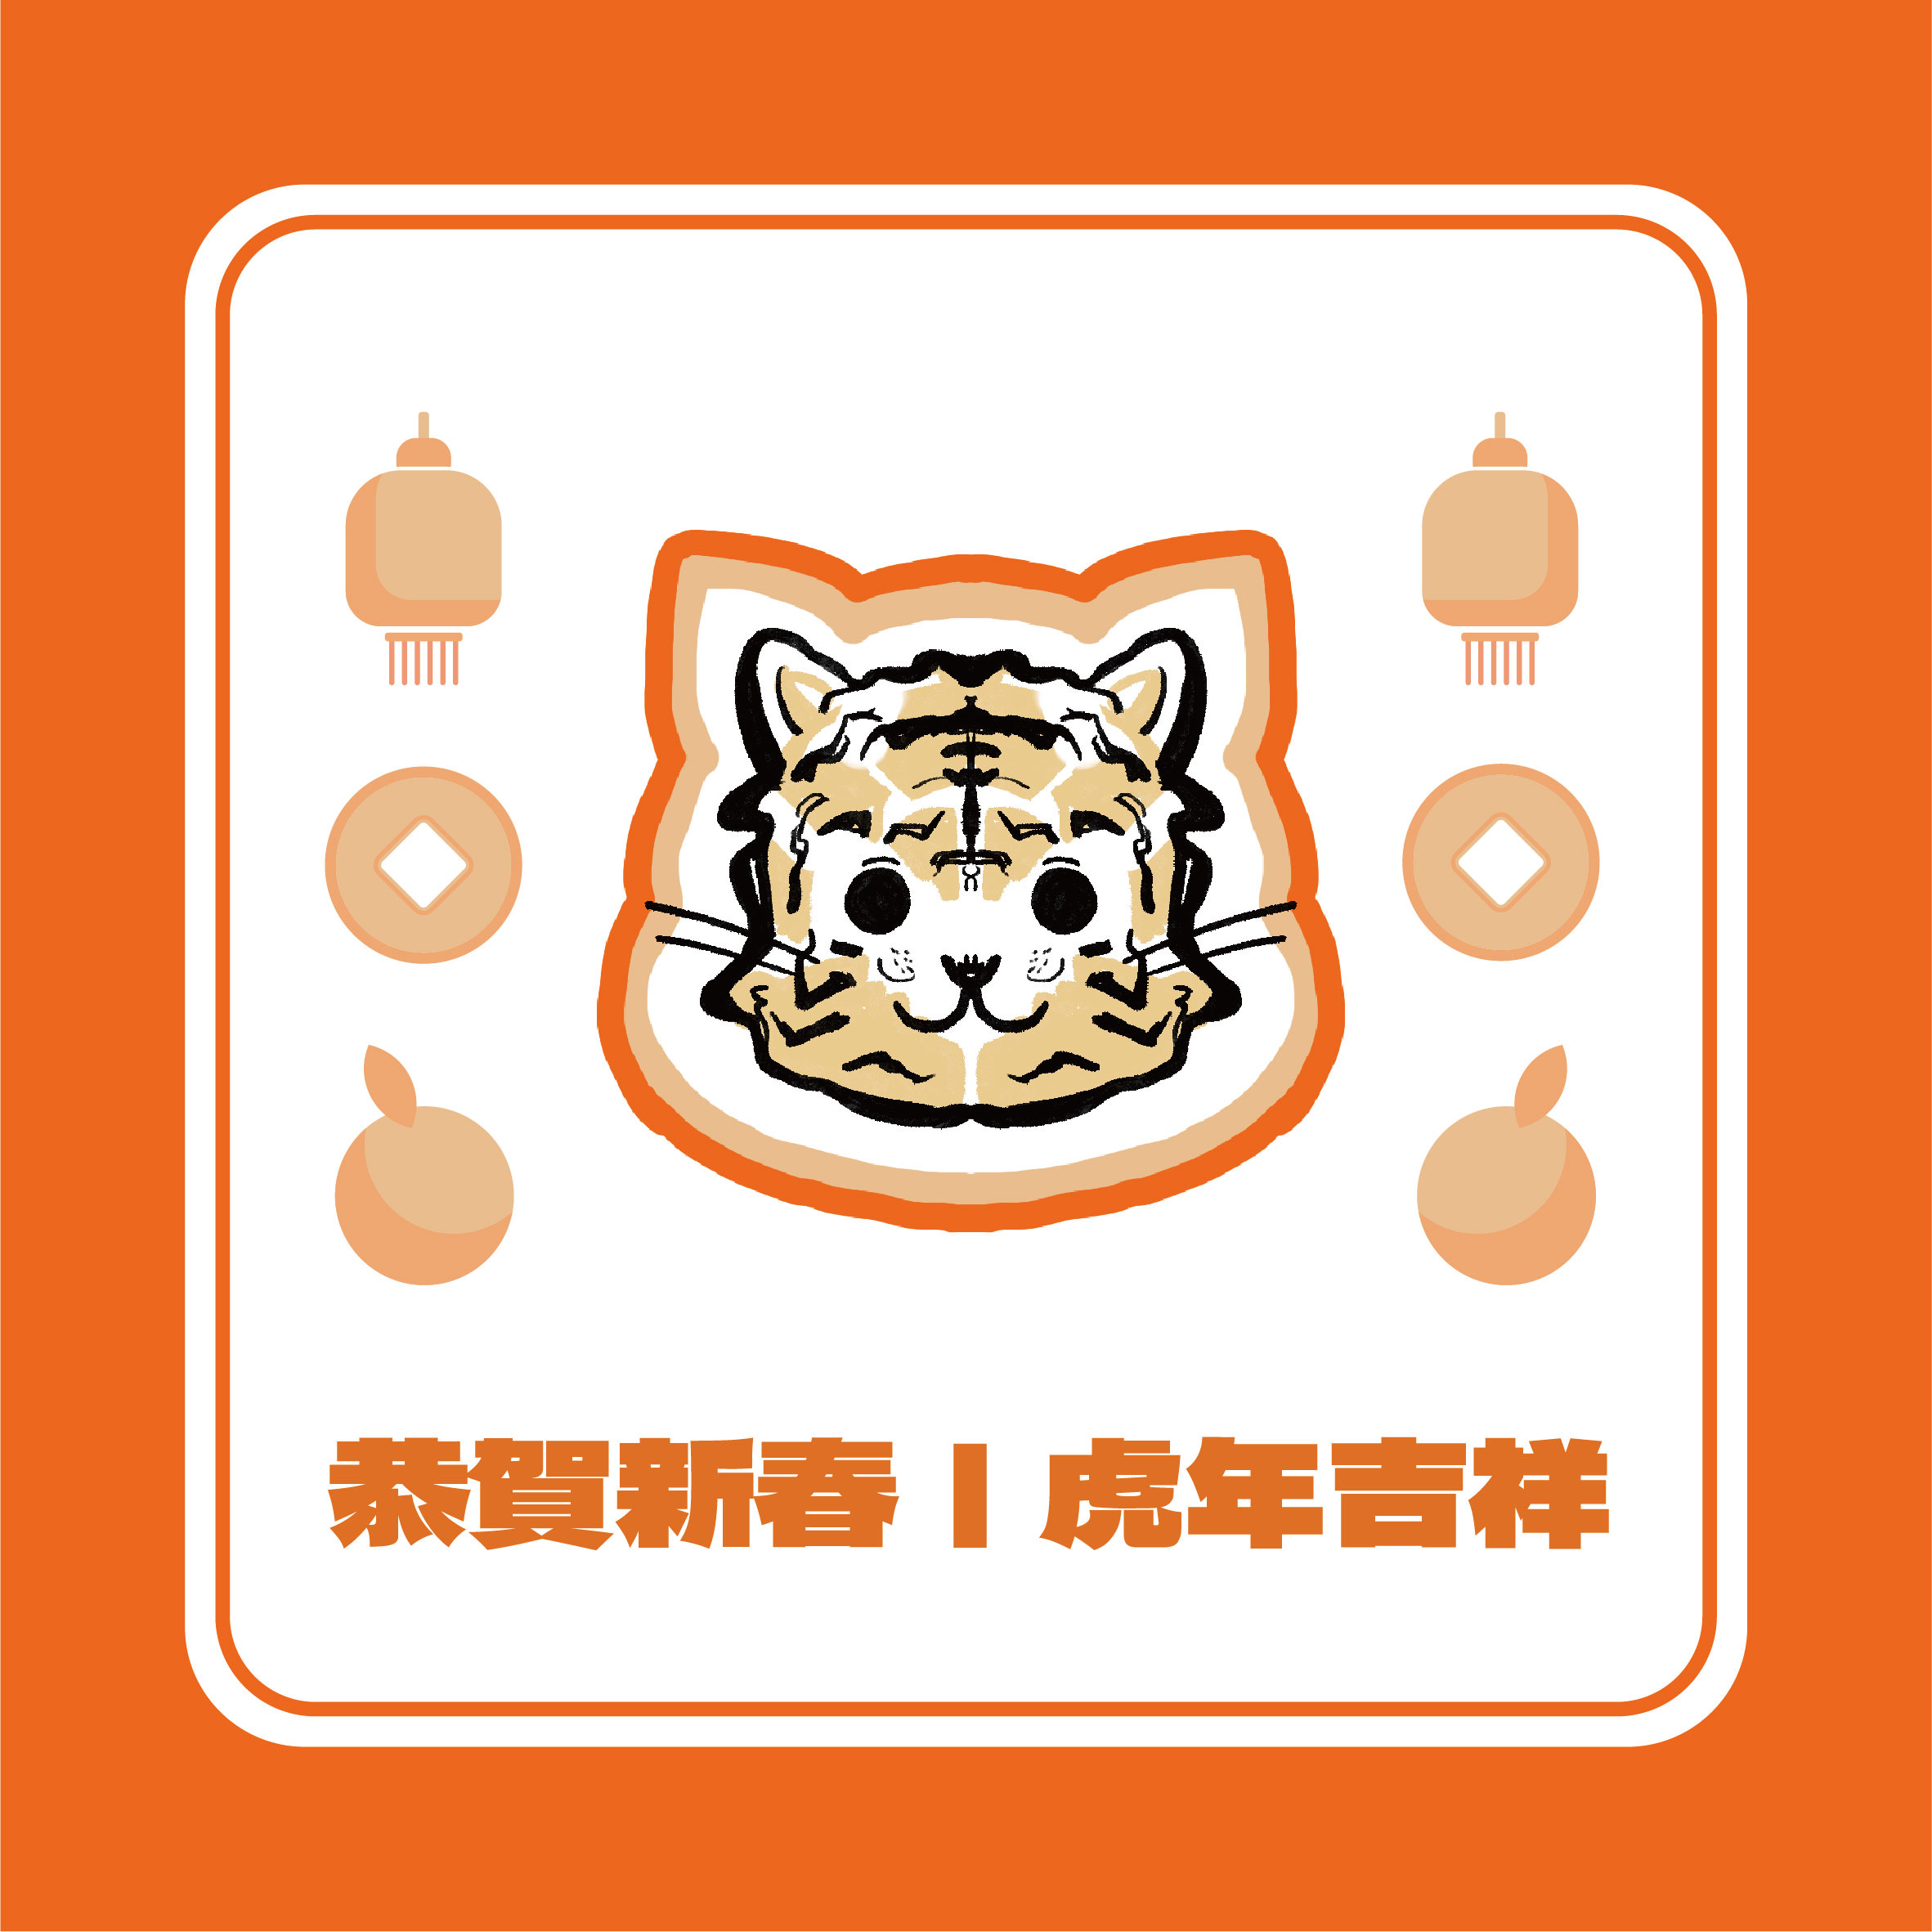 臺越環境保護海外科研中心祝賀虎年吉祥